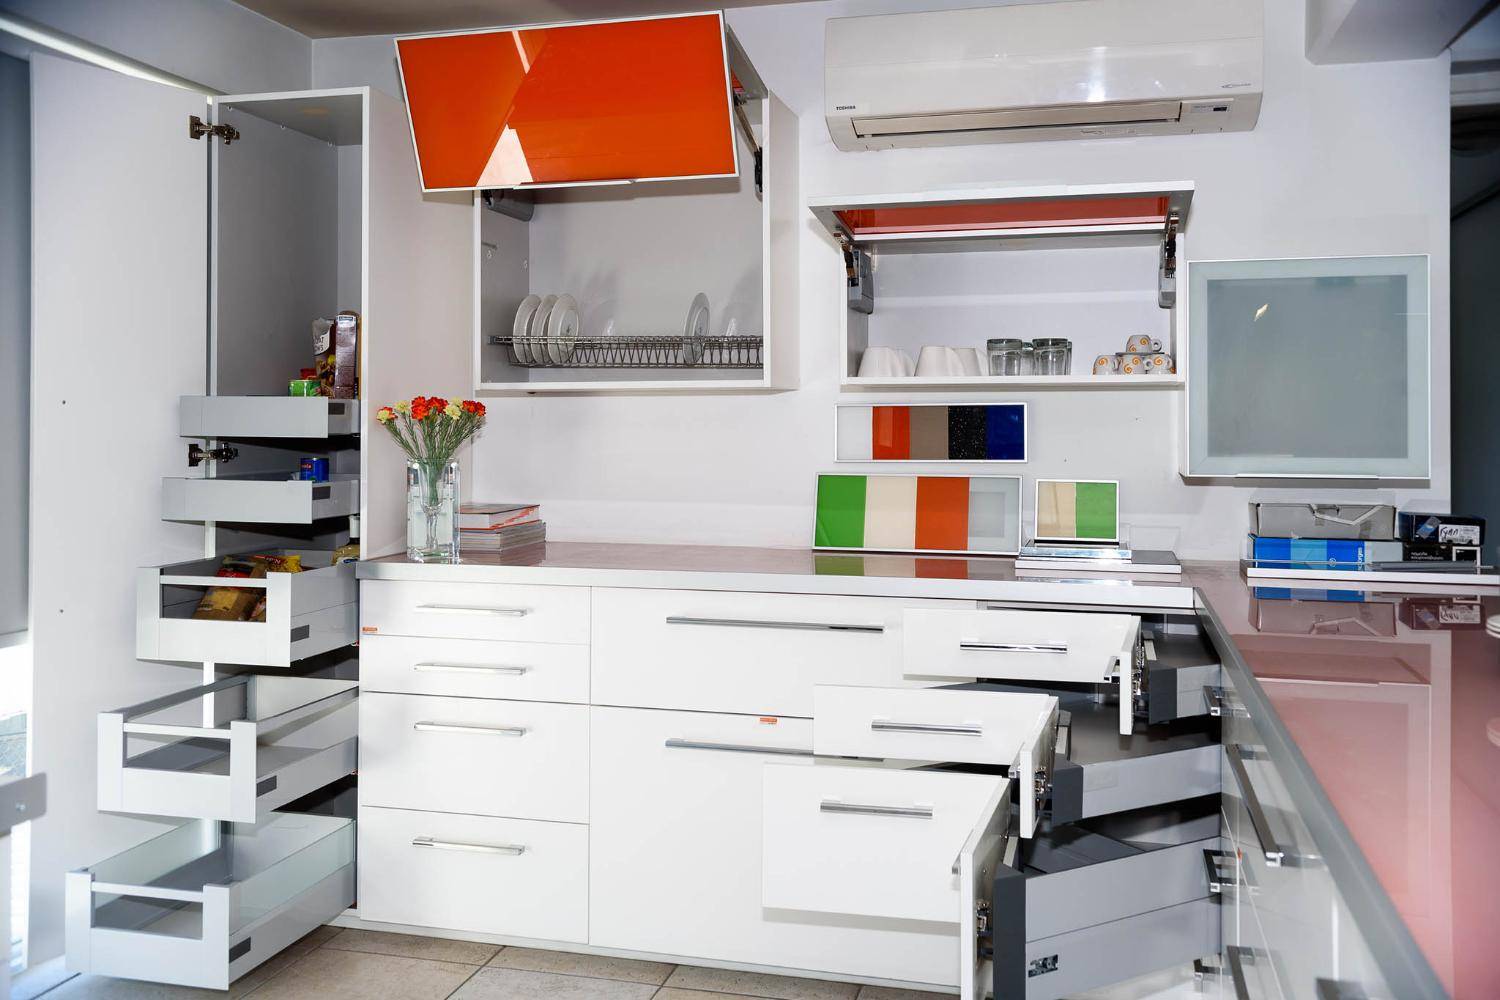 Функциональная кухня, как выбрать кухонную вытяжку и мебель на кухню